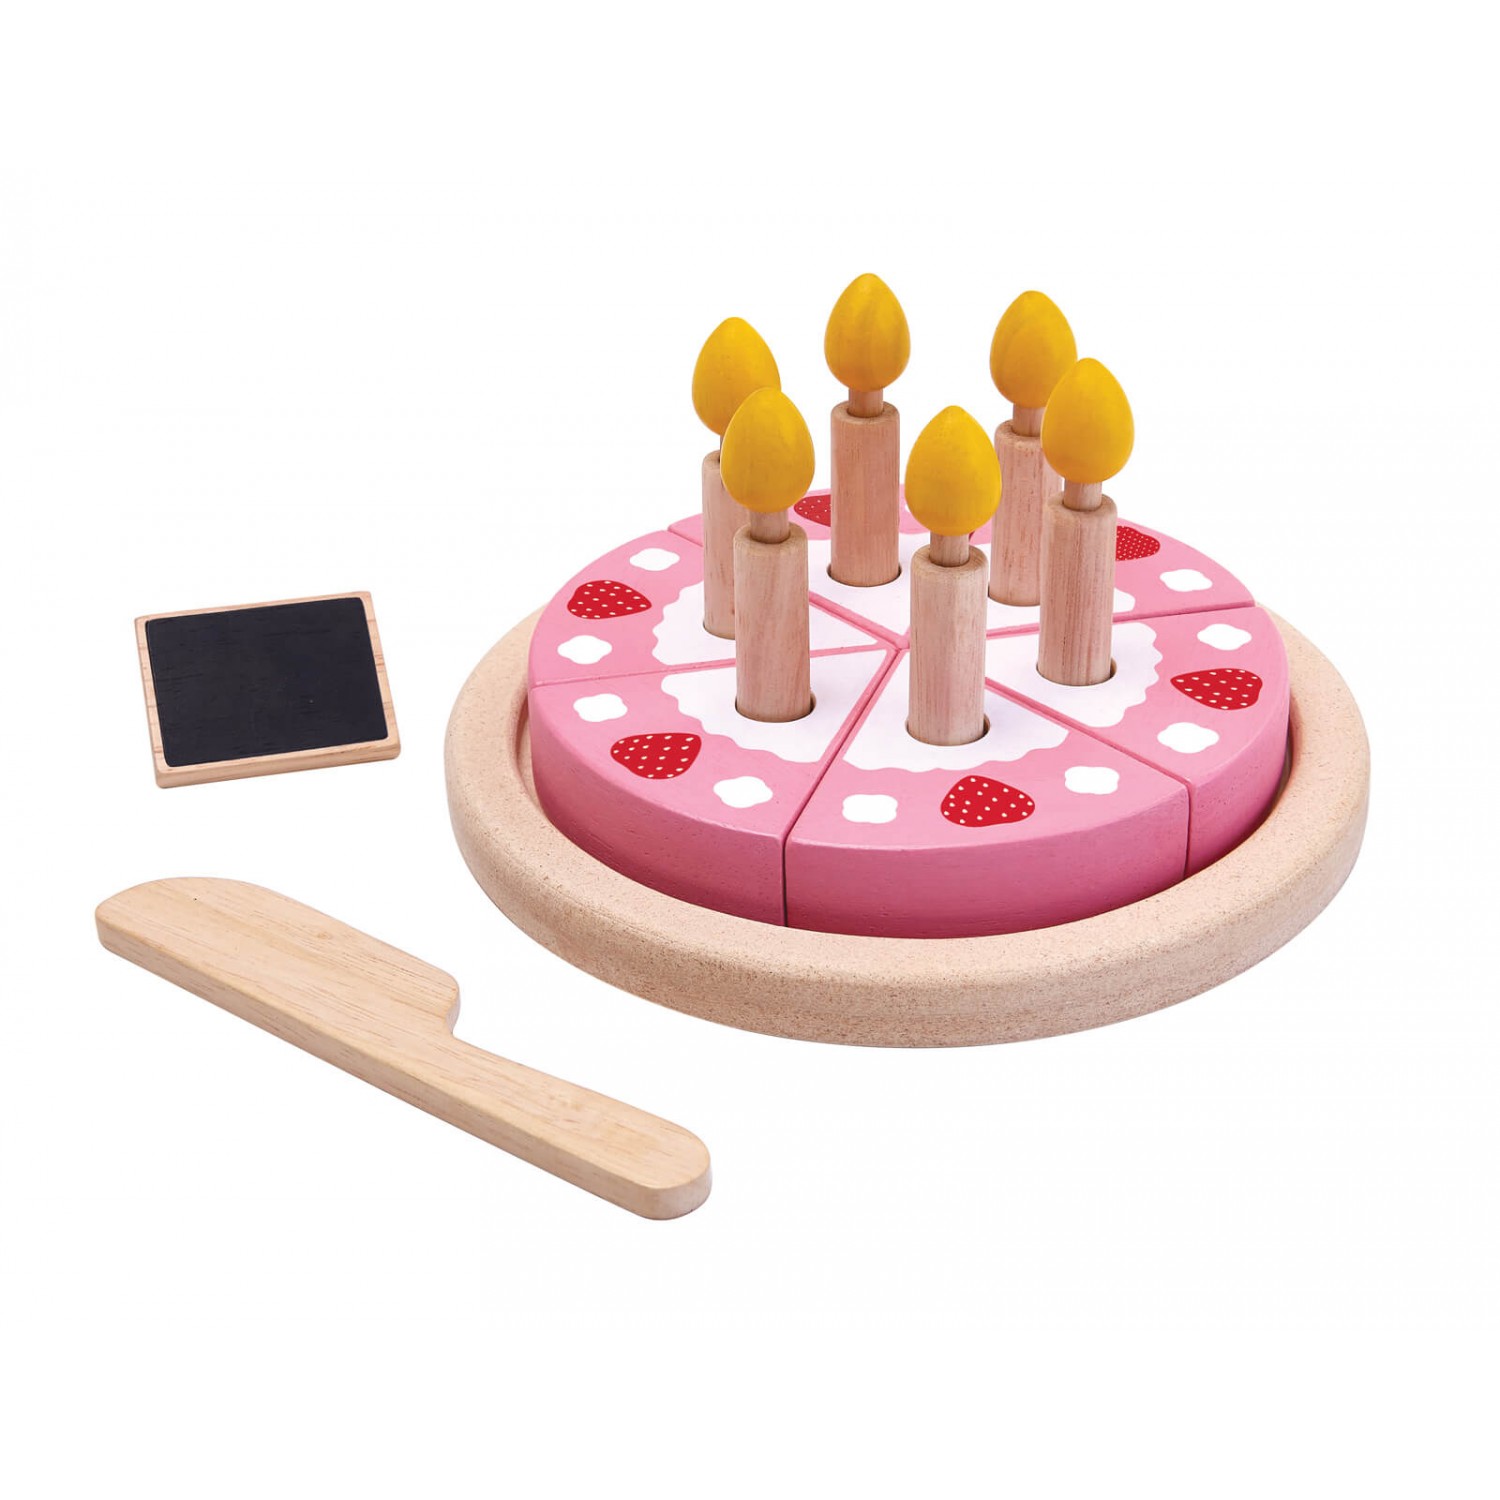 BIRTHDAY CAKE SET 2yrs+ Plan Toys